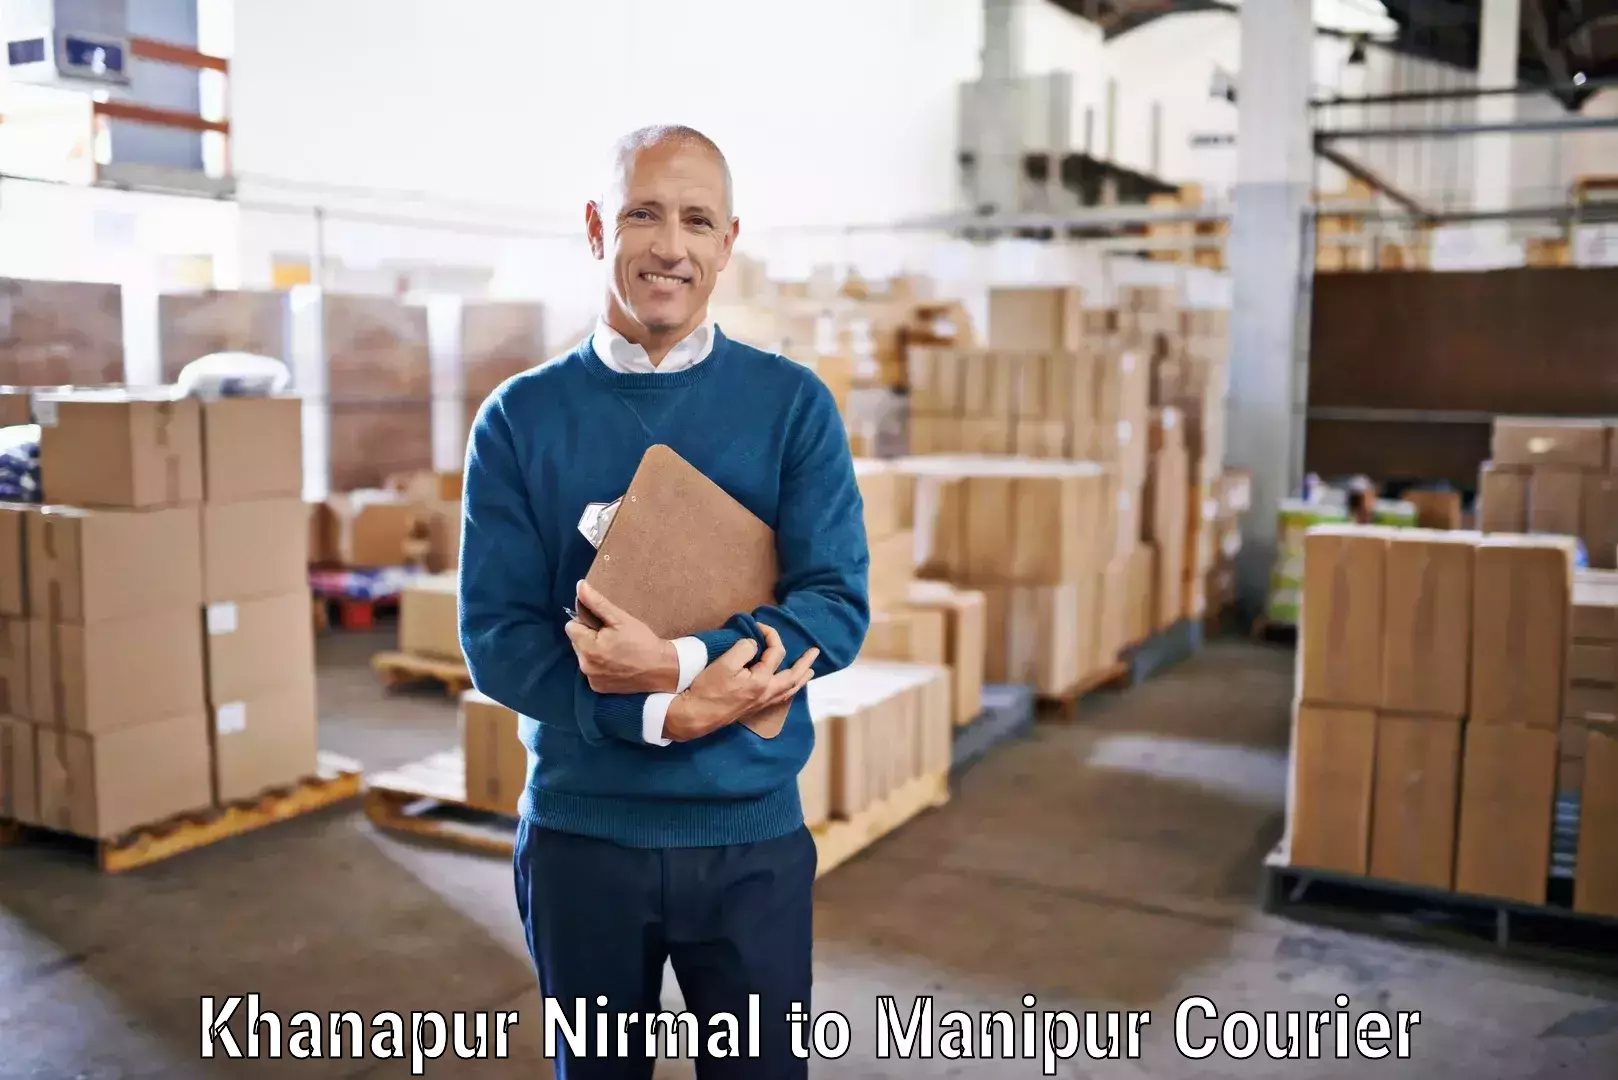 Premium courier services Khanapur Nirmal to Chandel